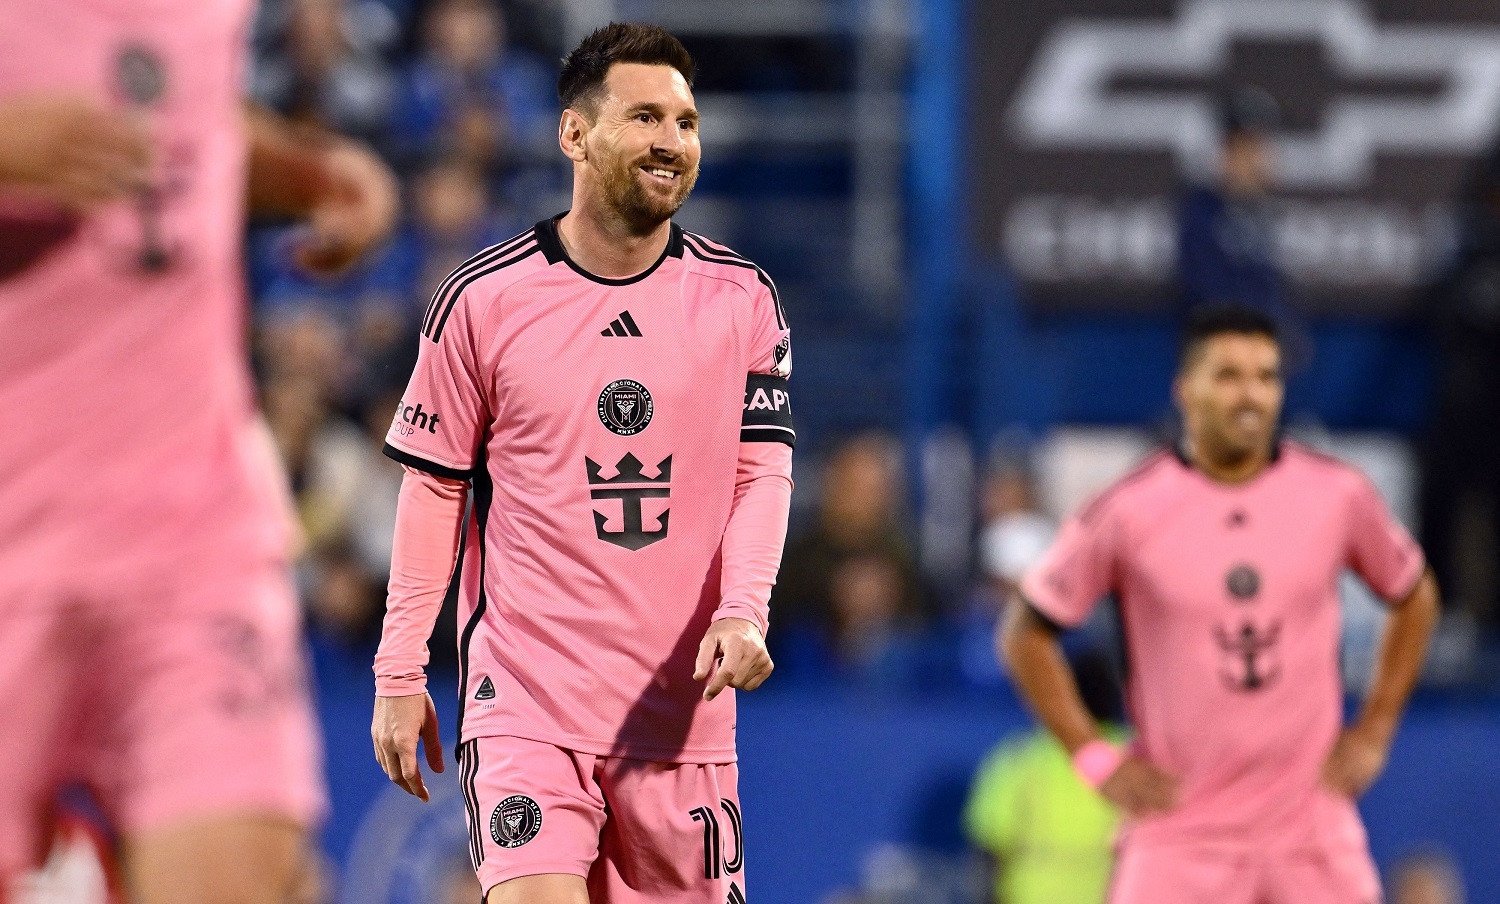 Messi's record $20.4 million salary dwarfs entire MLS teams